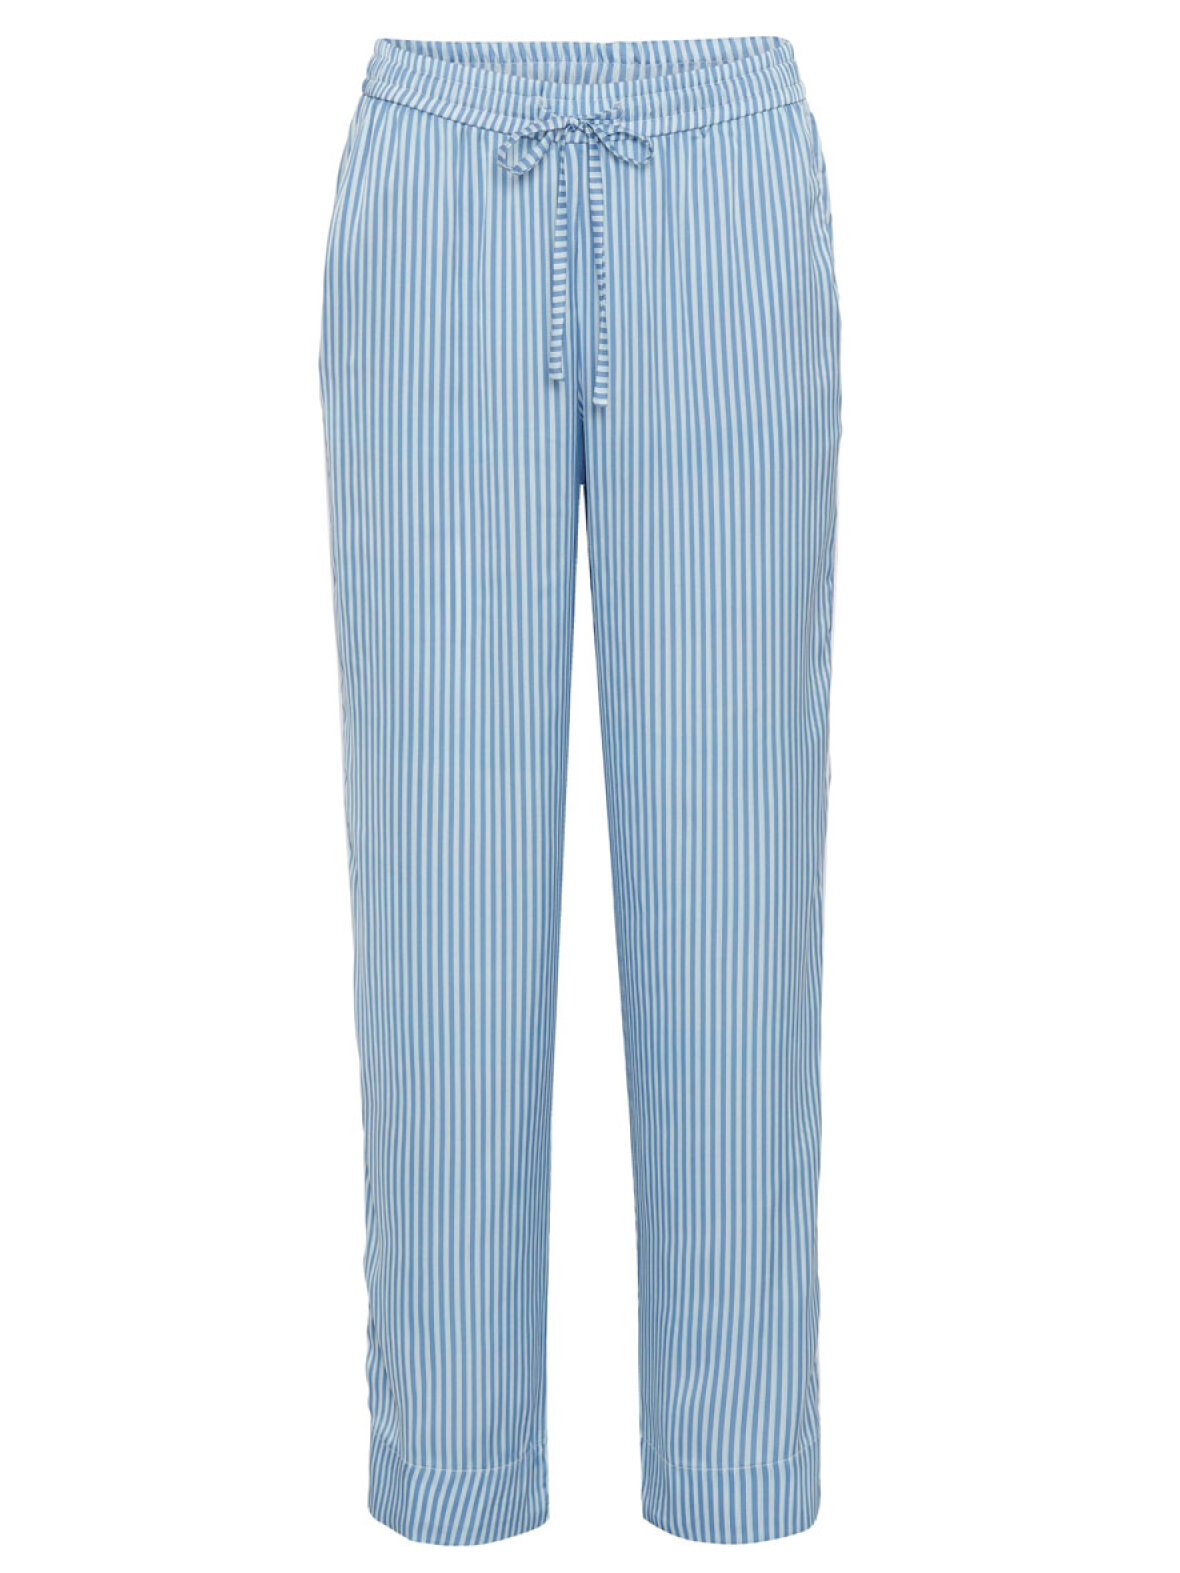 Frontier gå på arbejde orm A'POKE - Karmamia Piper Pants Blue Stripe - Shop blå stribet bukser